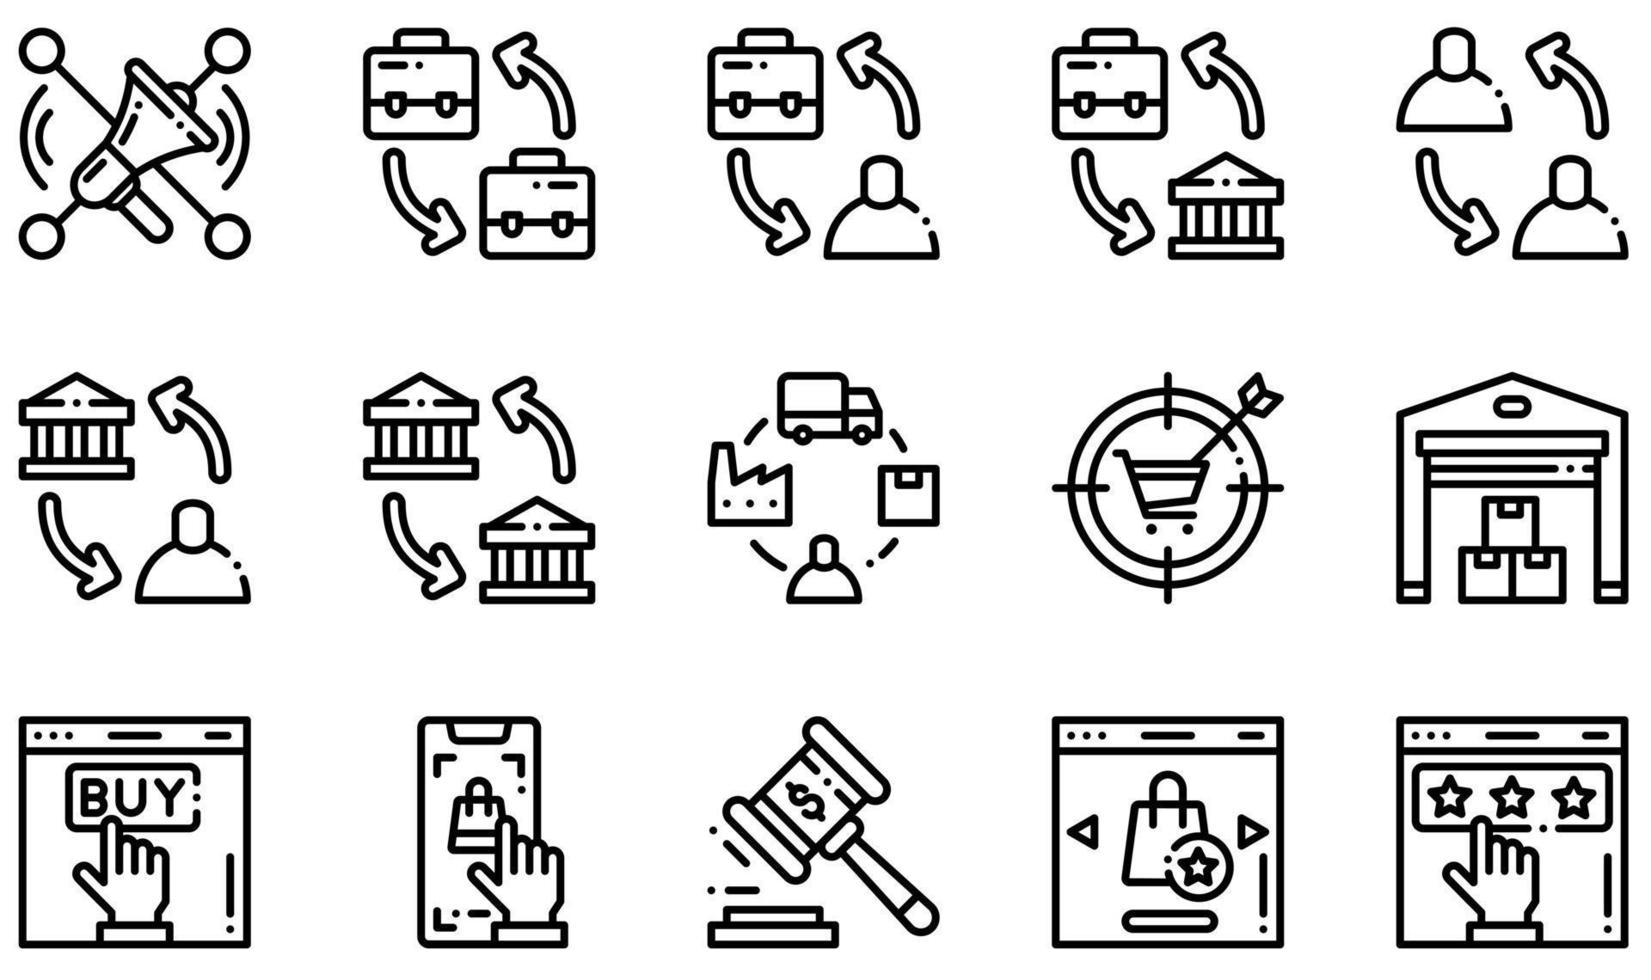 ensemble d'icônes vectorielles liées au commerce électronique. contient des icônes telles que le marketing social, b2b, b2c, la chaîne d'approvisionnement, l'entrepôt, la qualité et plus encore. vecteur